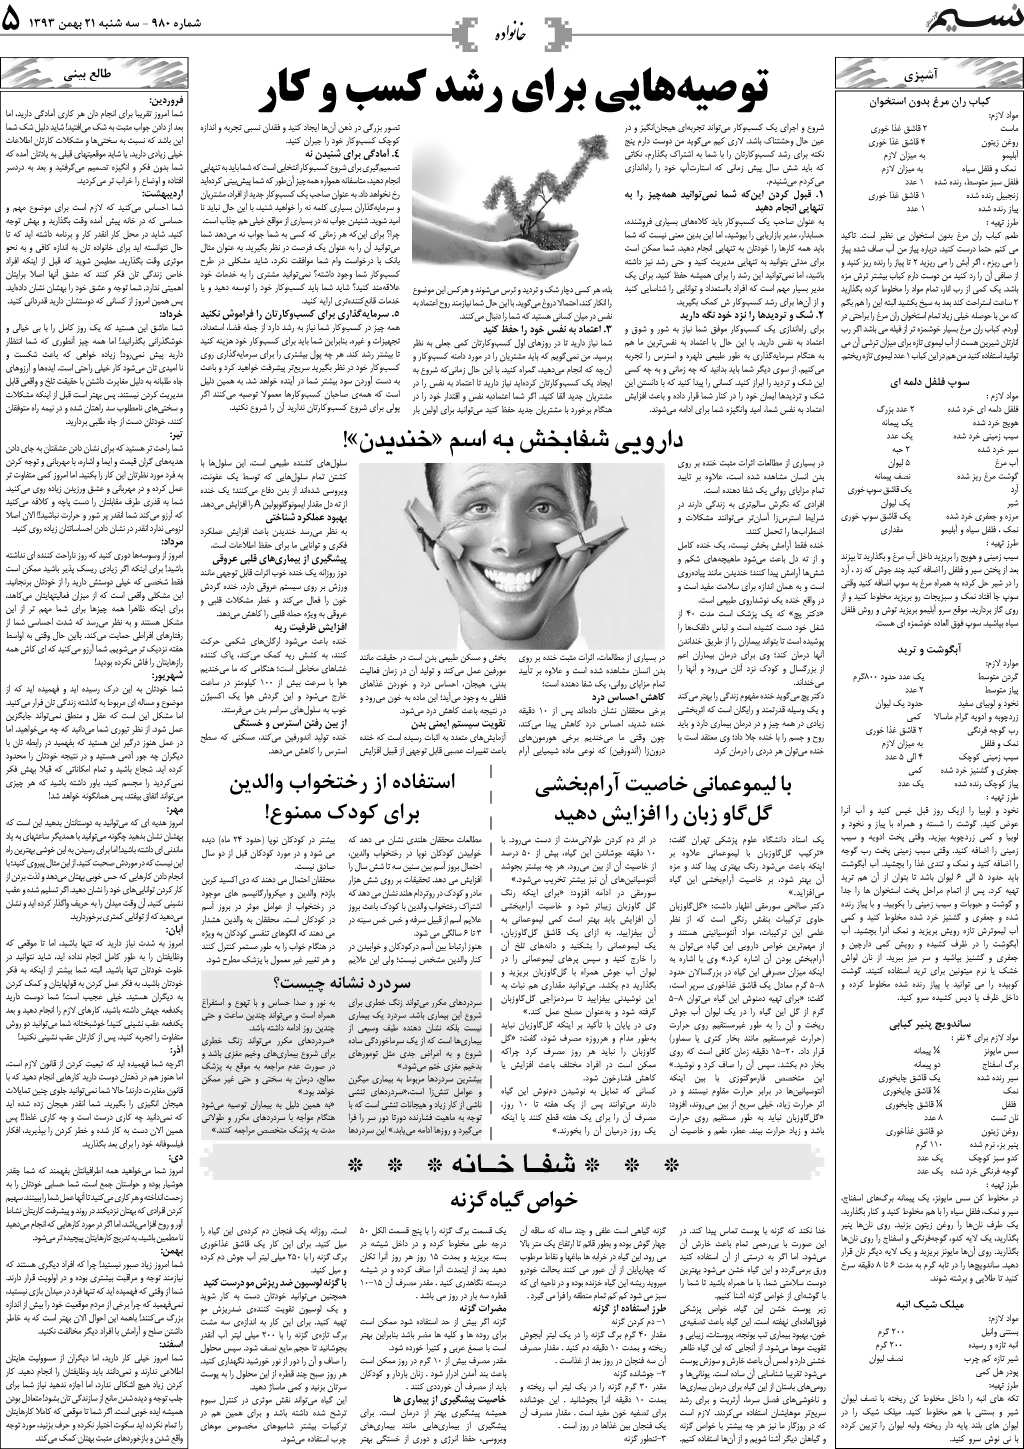 صفحه خانواده روزنامه نسیم شماره 980